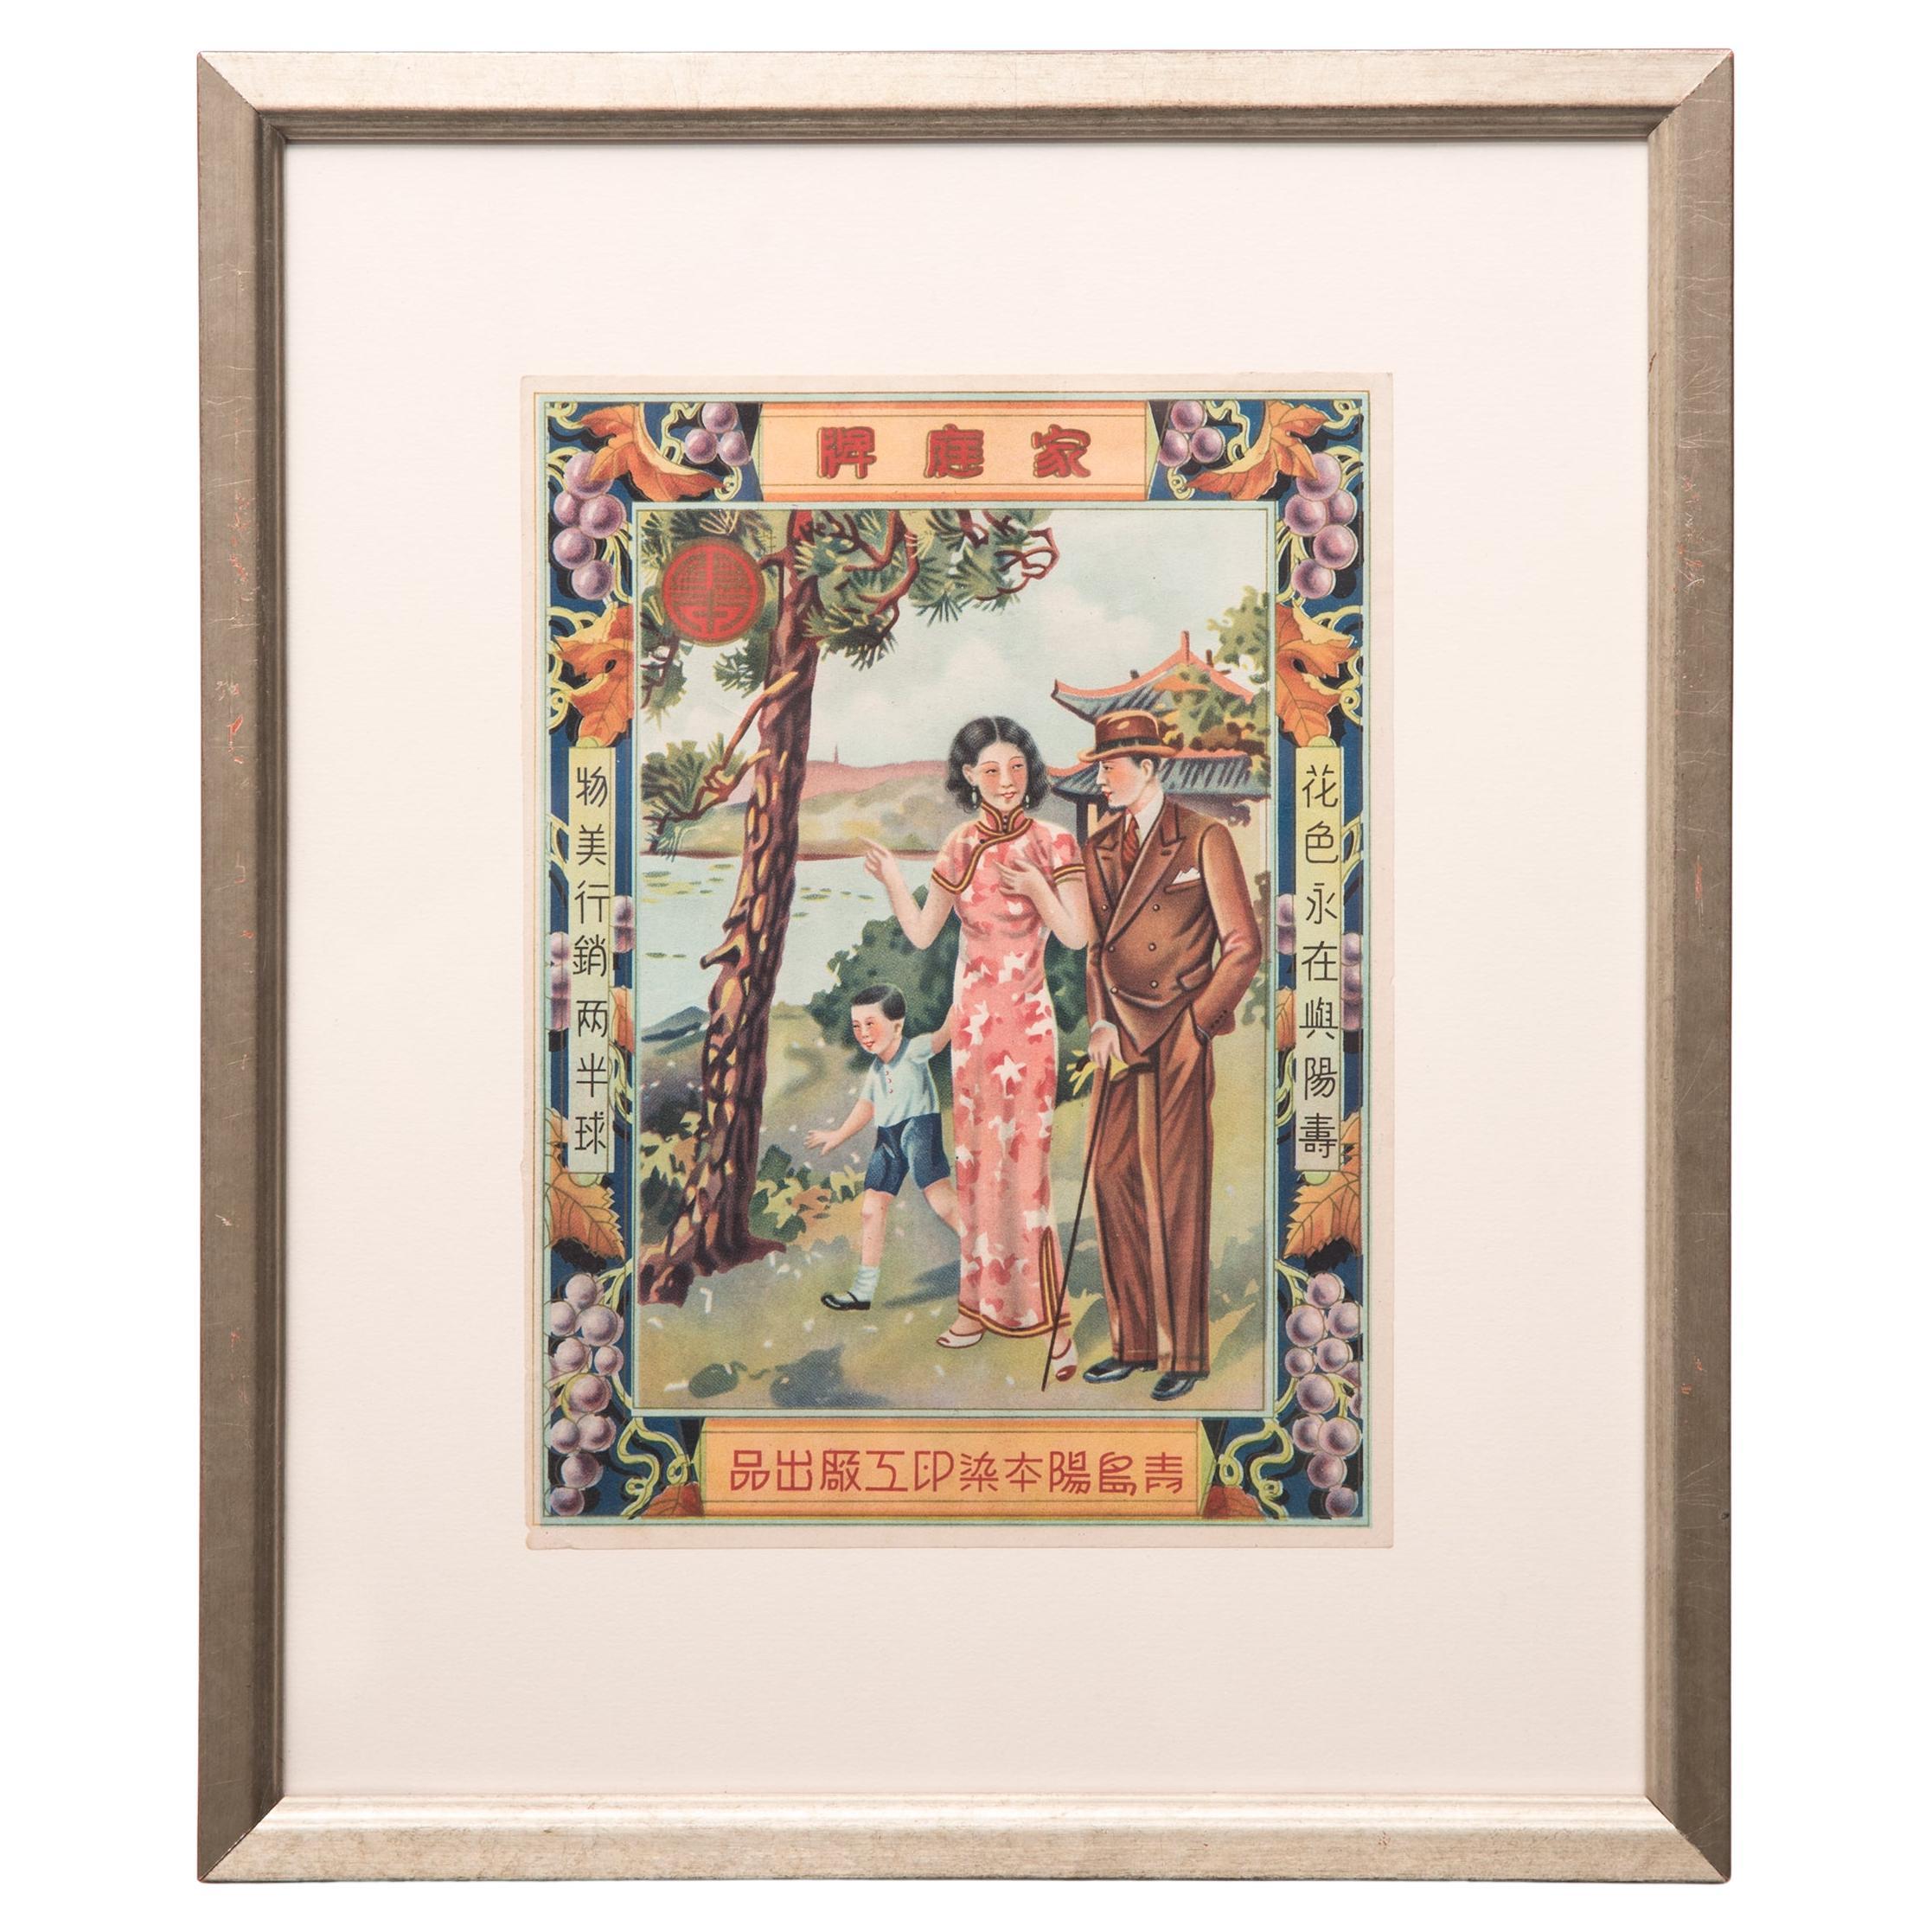 Publicité chinoise vintage encadrée East West, circa 1920